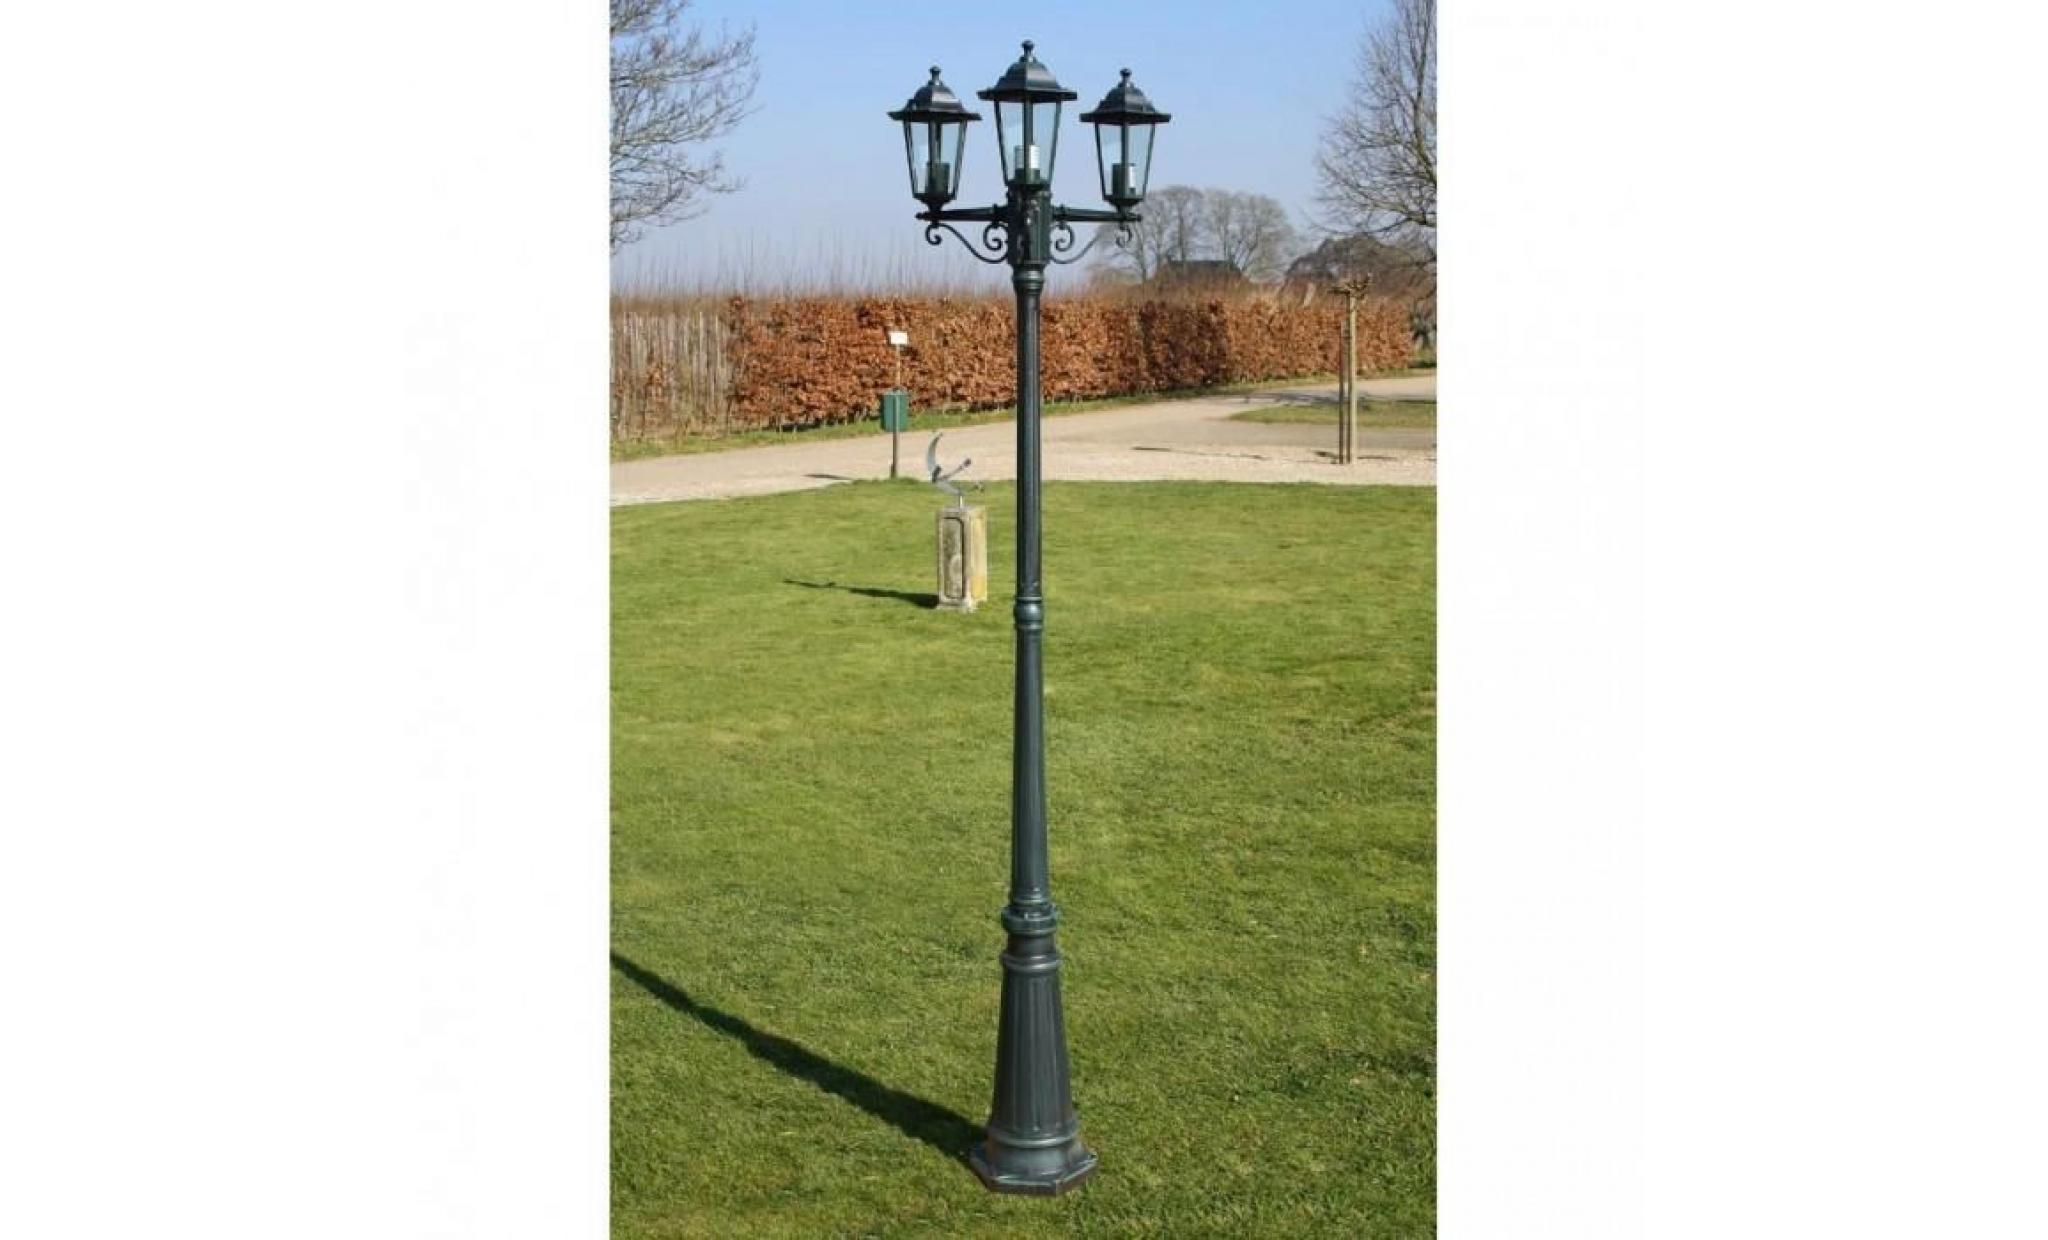 r134 hauteur 215 cm couleur male ce lampadaire vert fonce/noir de 215 cm a 3 lampes e